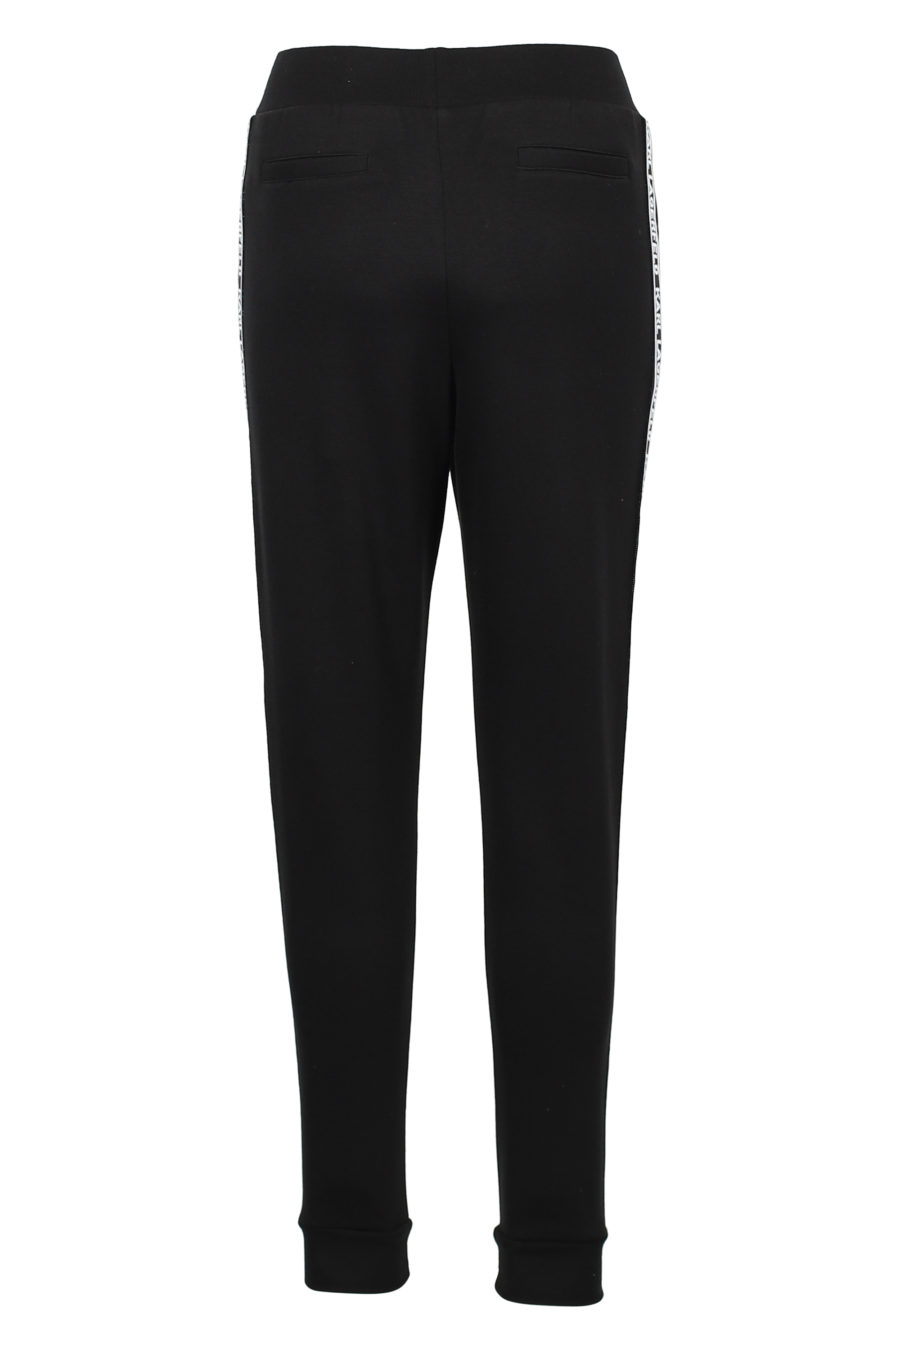 Pantalón de chandal negro con logo blanco lateral - IMG 3176